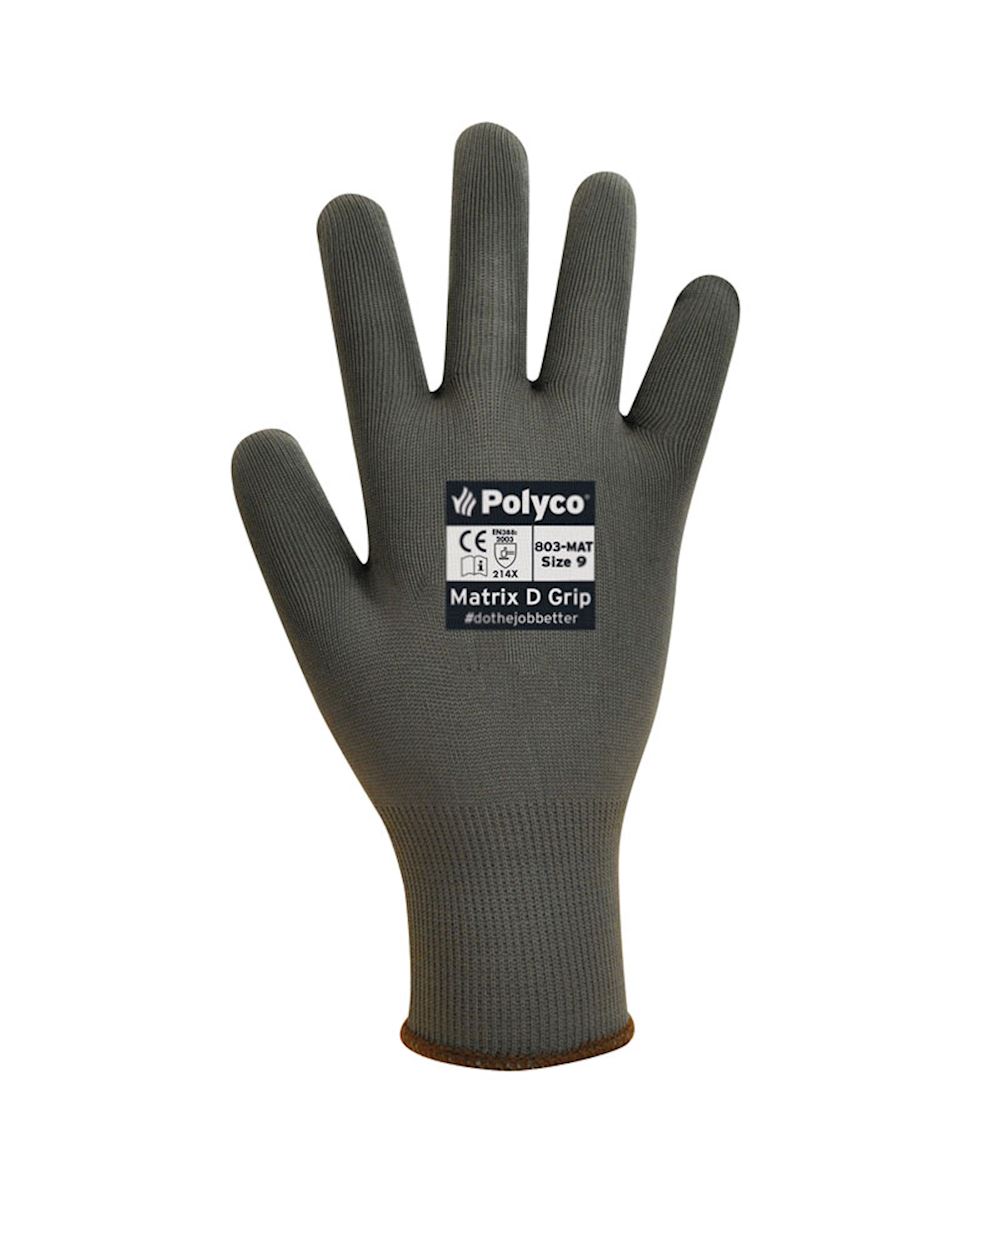 Matrix D Grip Glove | From Aspli Safety